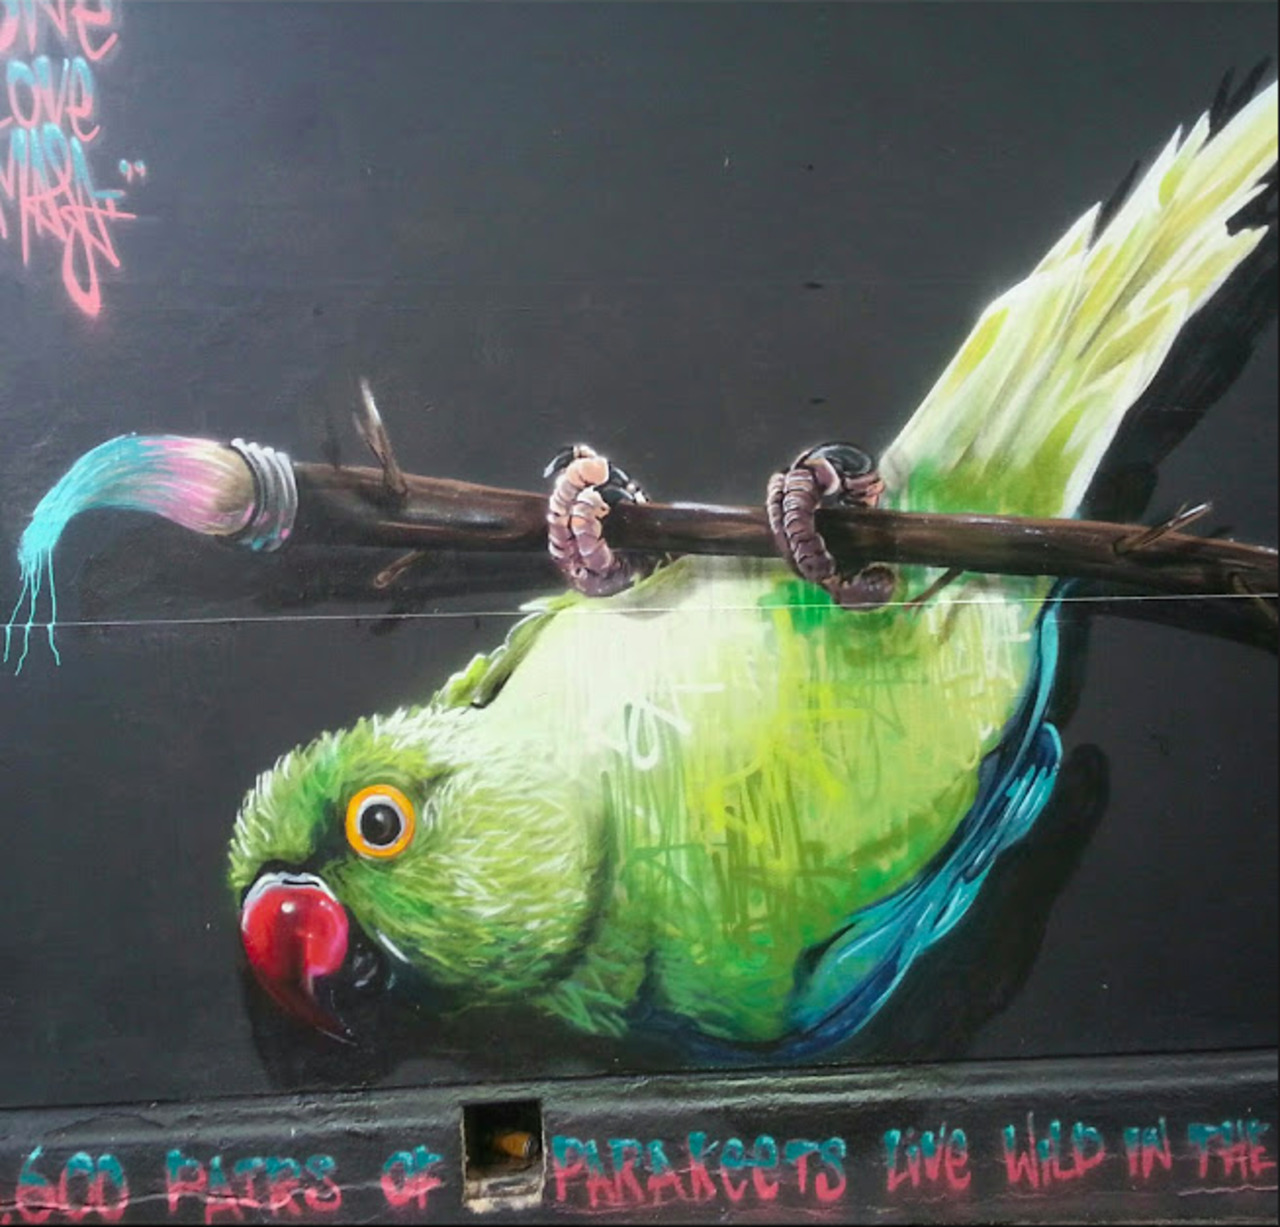 #Streetart in #London #art #parakeets 
https://plus.google.com/u/0/communities/110555863698582336481 http://t.co/WIYezx6M4E